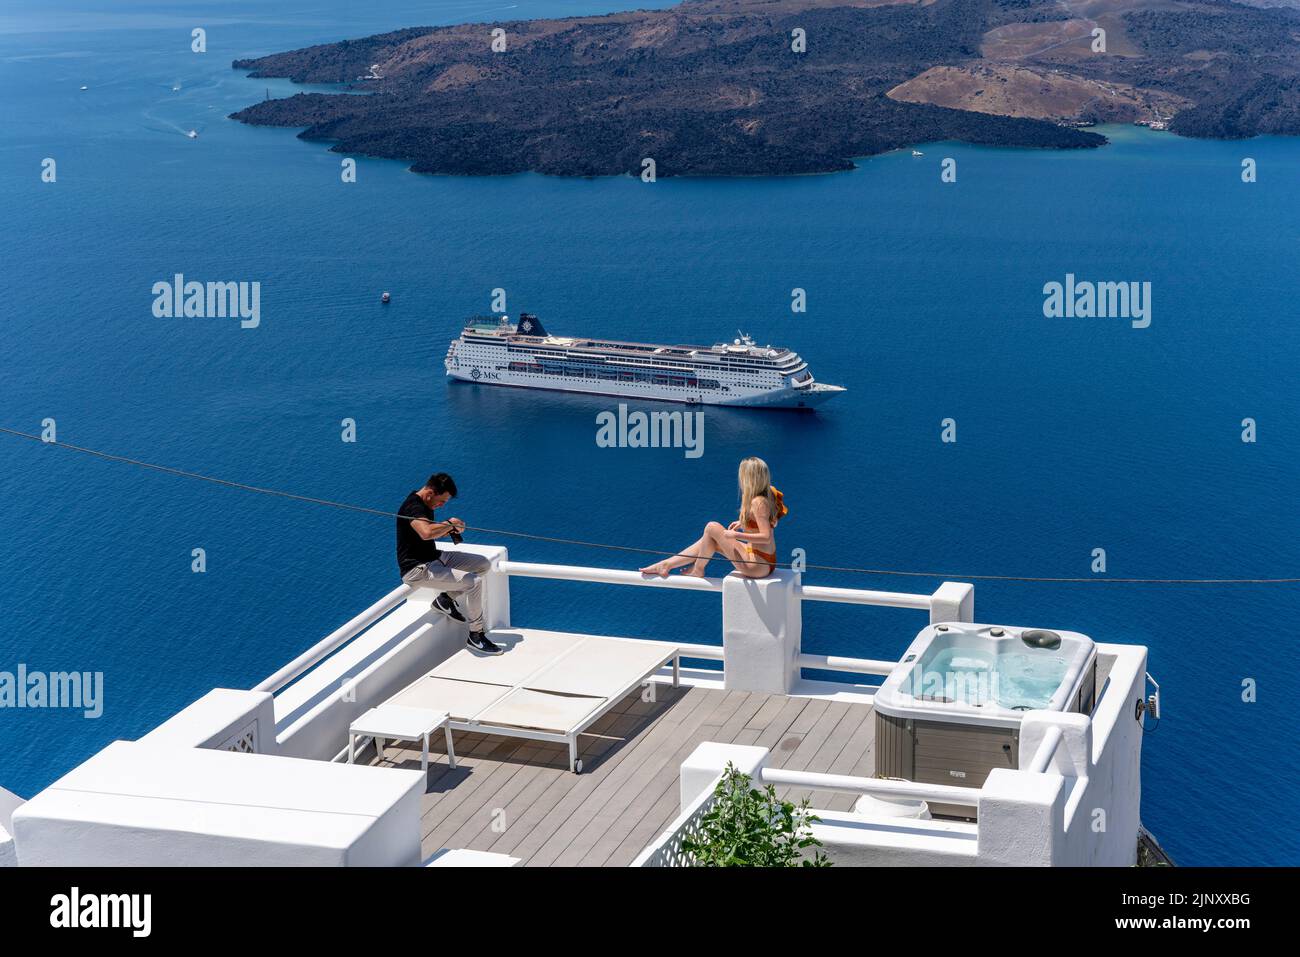 Une jeune femme pose pour une photo sur l'île de Santorini, les îles grecques, la Grèce. Banque D'Images